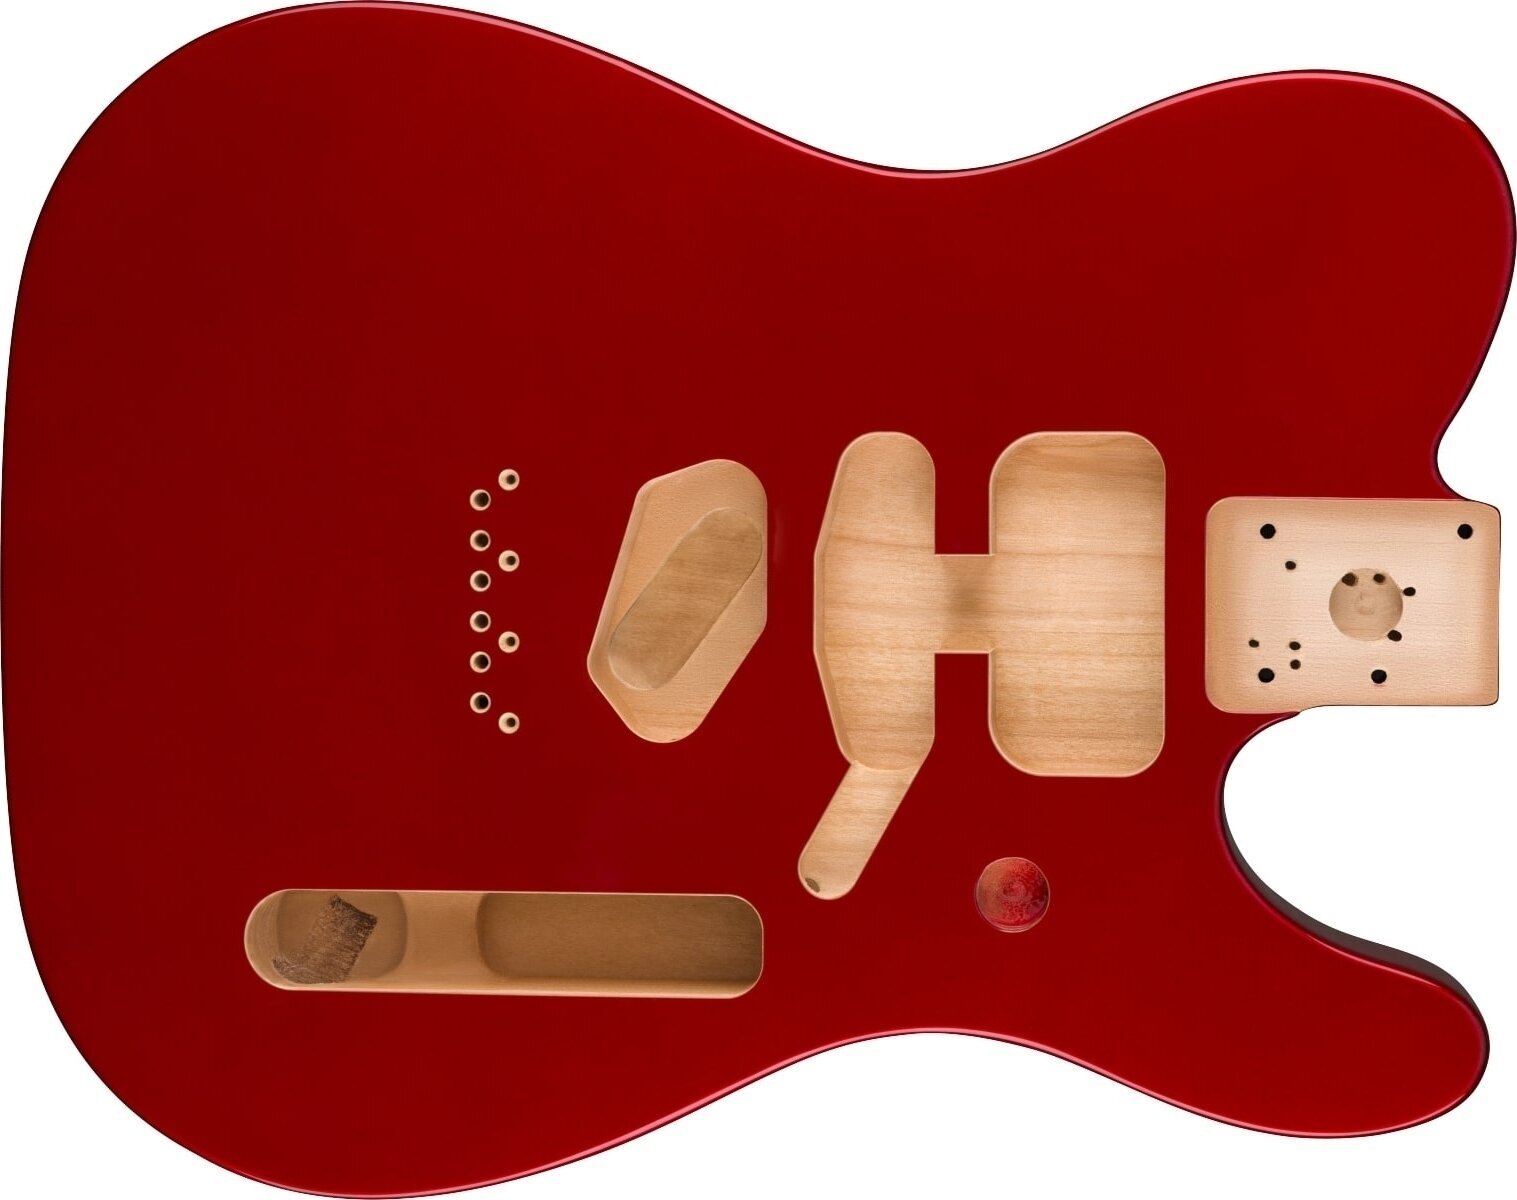 Korpus do gitary Fender Deluxe Series Telecaster SSH Candy Apple Red